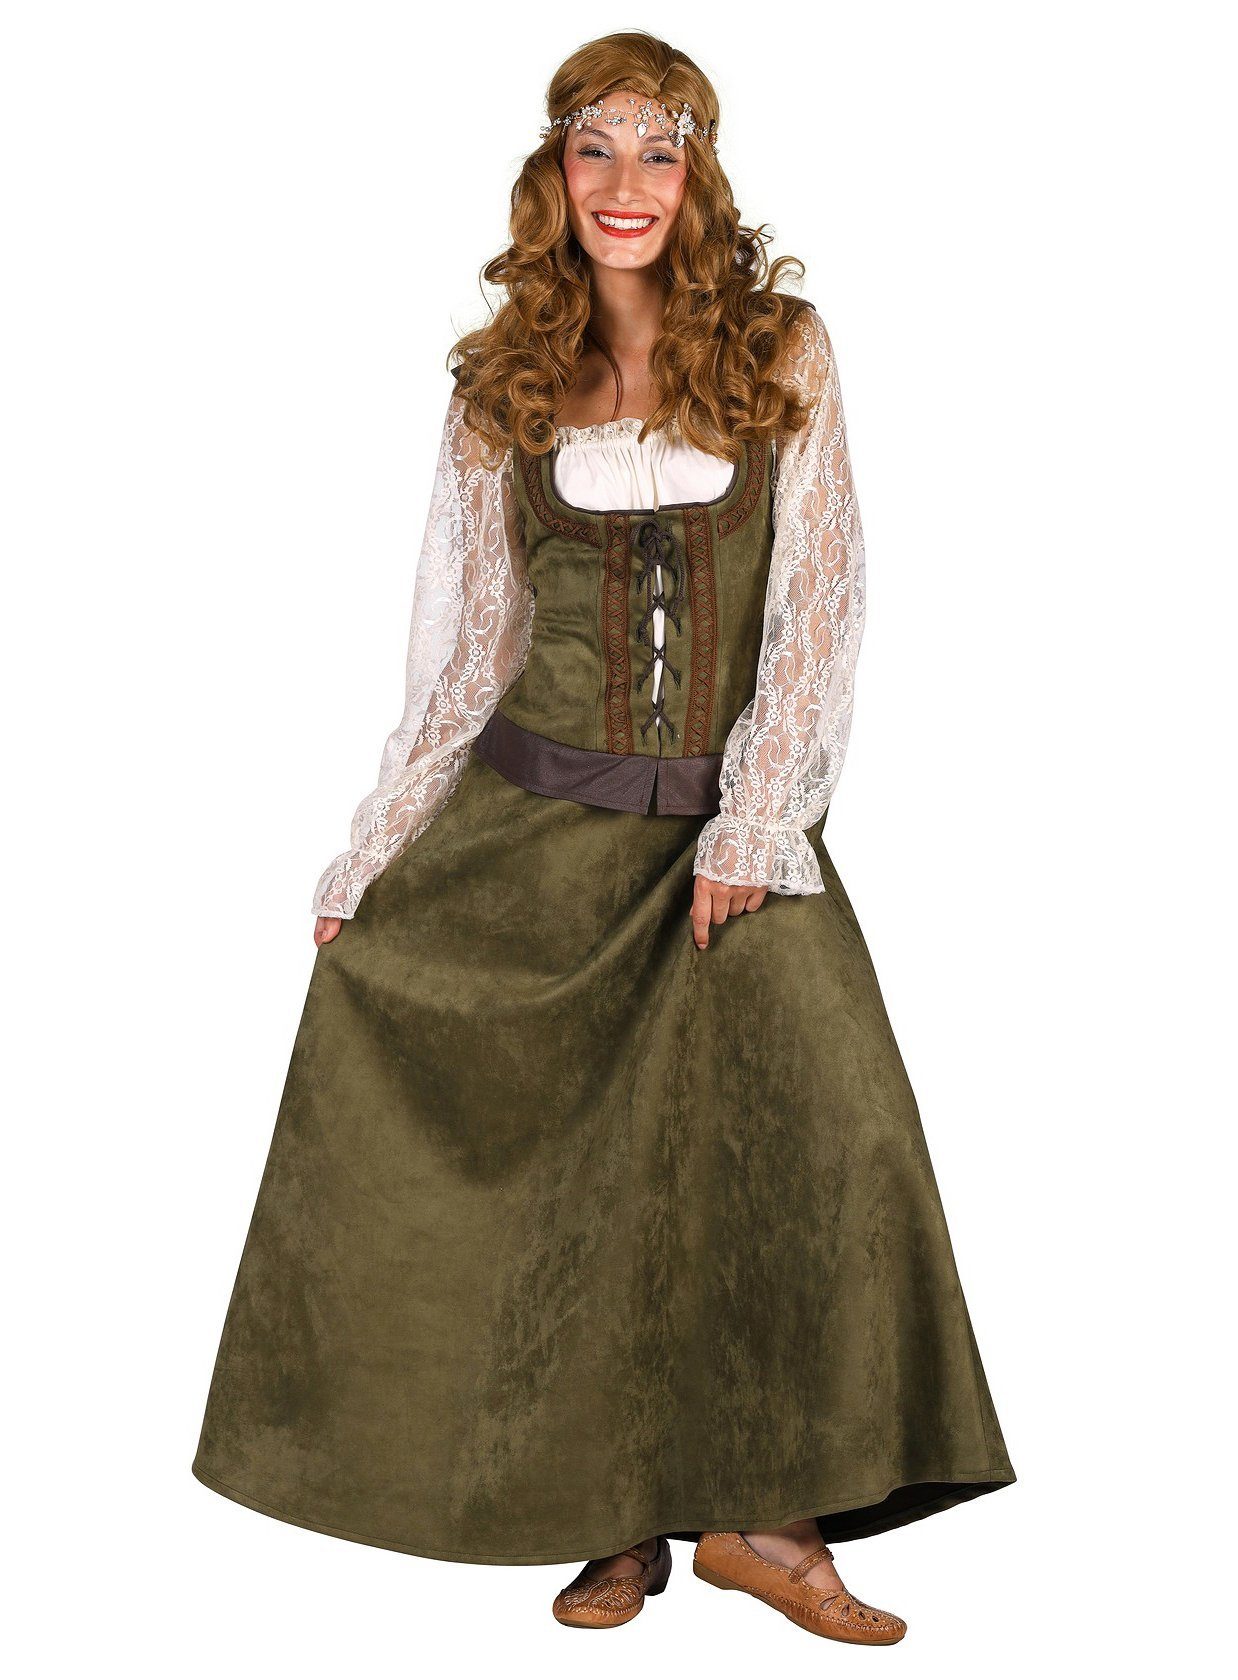 thetru Kostüm Maid Marian Kostüm grün, Mittelalterliches Kleid für holde Jungfrauen und legendäre Damen